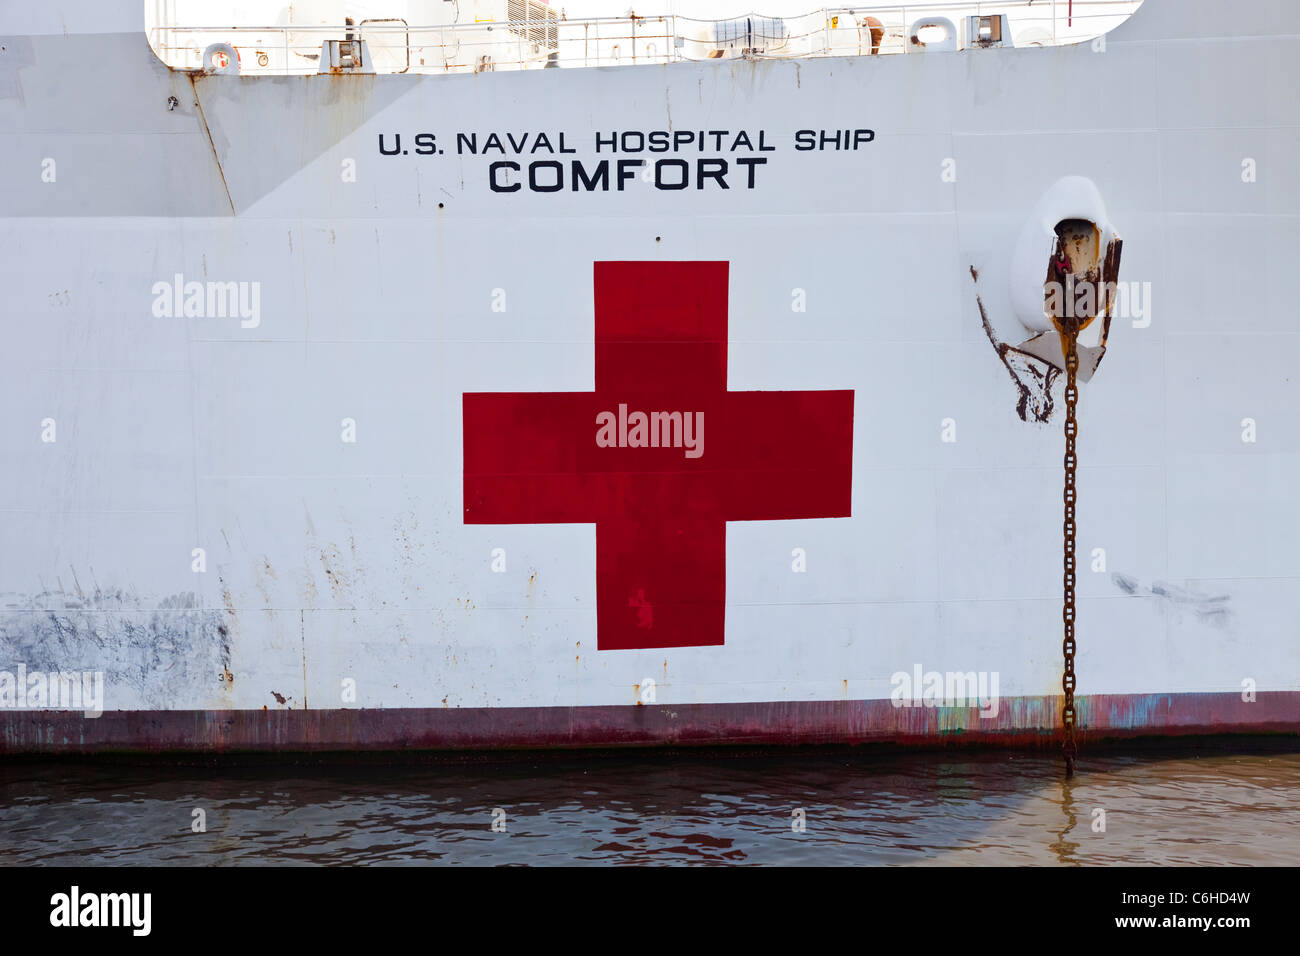 USNS Comfort, Hospital Ship, San Salvador, El Salvador Stock Photo